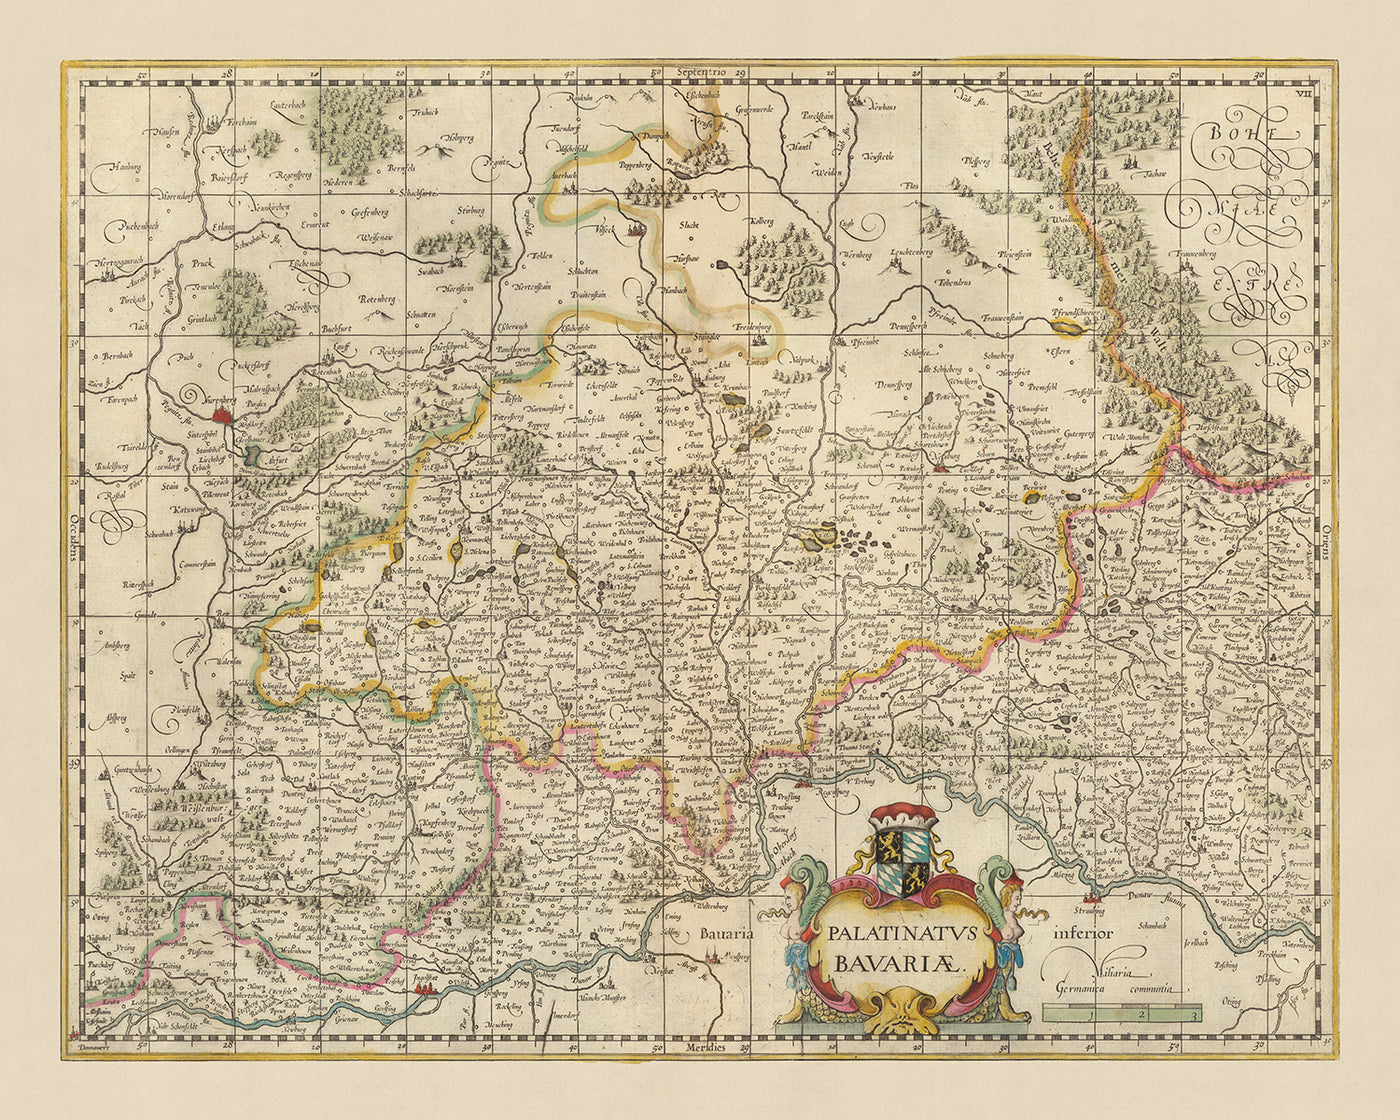 Old Map of Palatinate of Bavaria by Visscher, 1690: Nuremberg, Ingolstadt, Regensburg, Erlangen, Český les Area